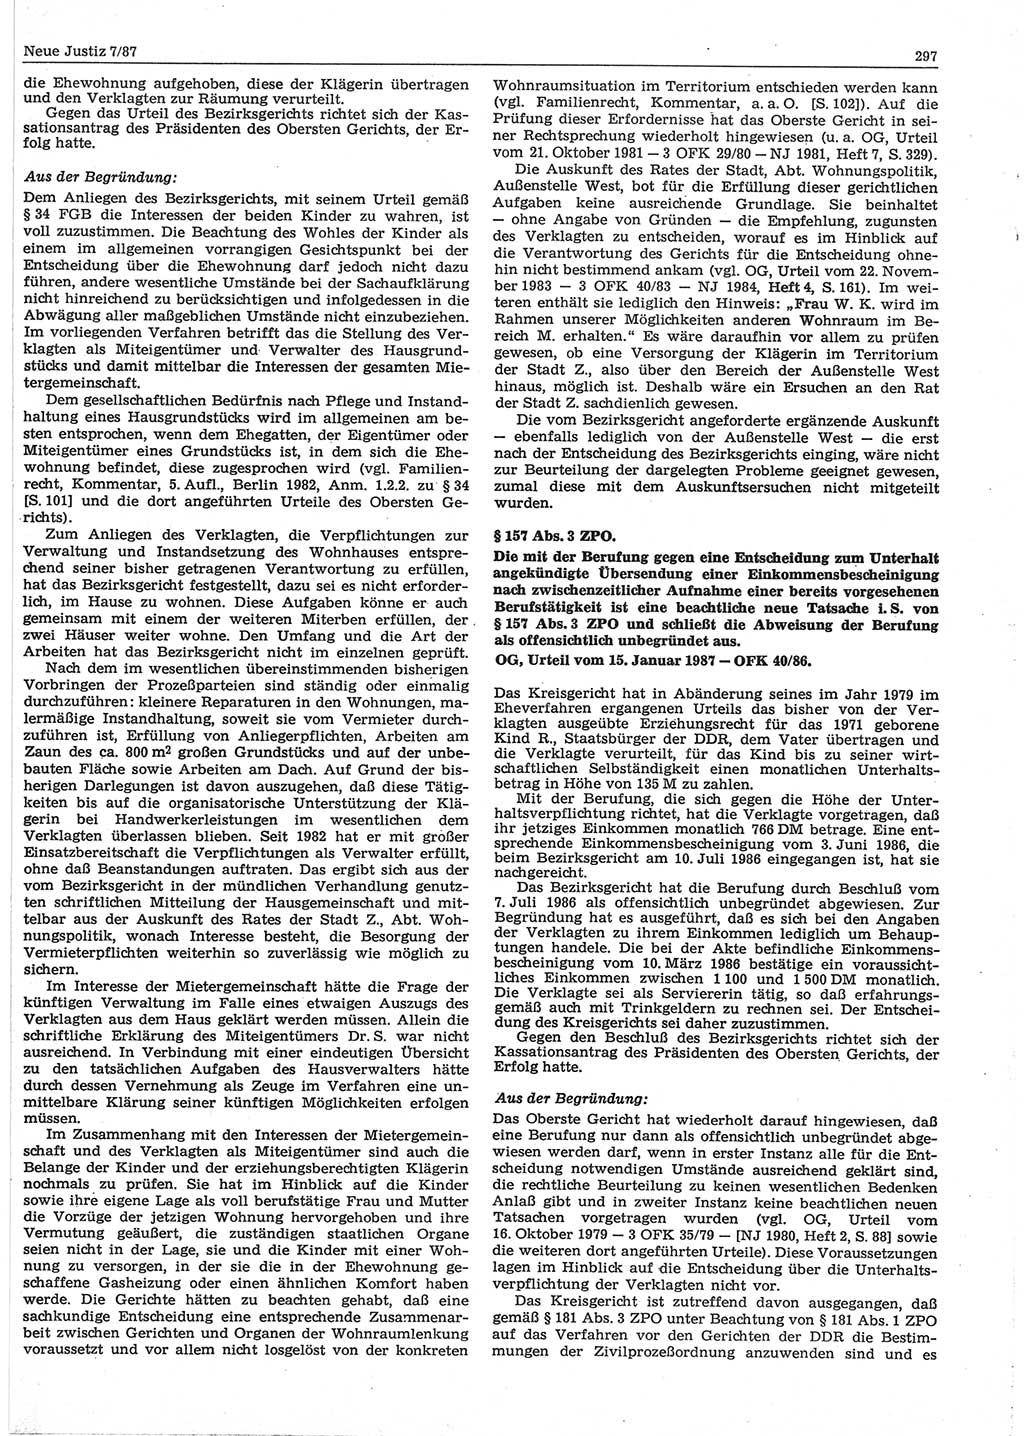 Neue Justiz (NJ), Zeitschrift für sozialistisches Recht und Gesetzlichkeit [Deutsche Demokratische Republik (DDR)], 41. Jahrgang 1987, Seite 297 (NJ DDR 1987, S. 297)